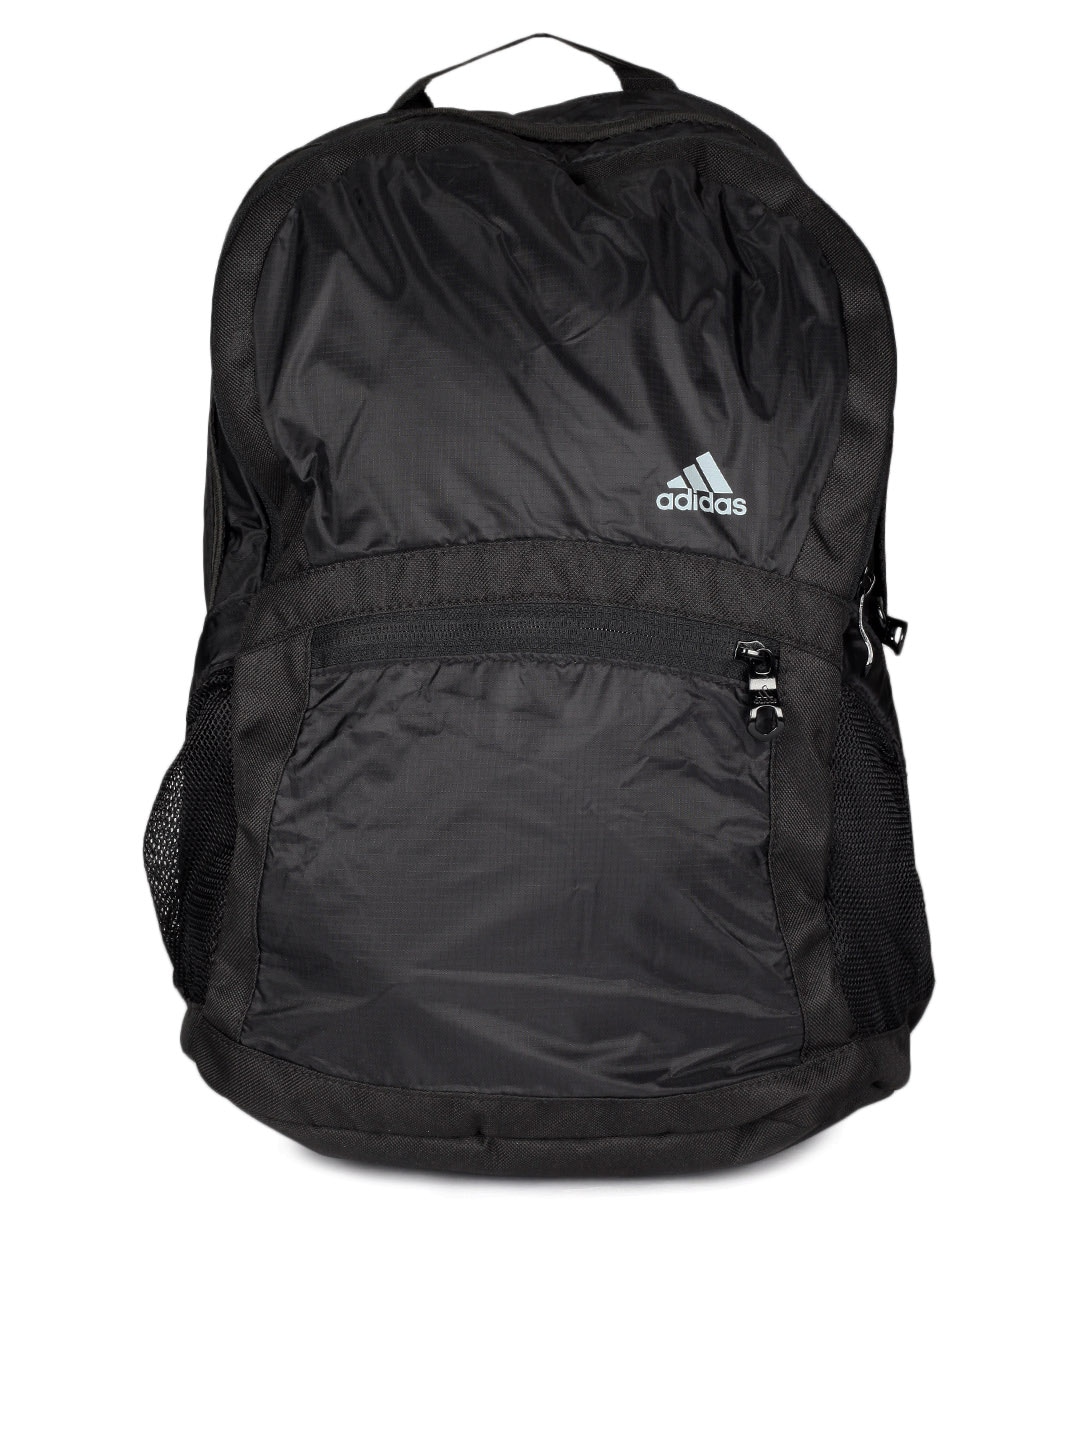 ADIDAS Unisex Black Backpack